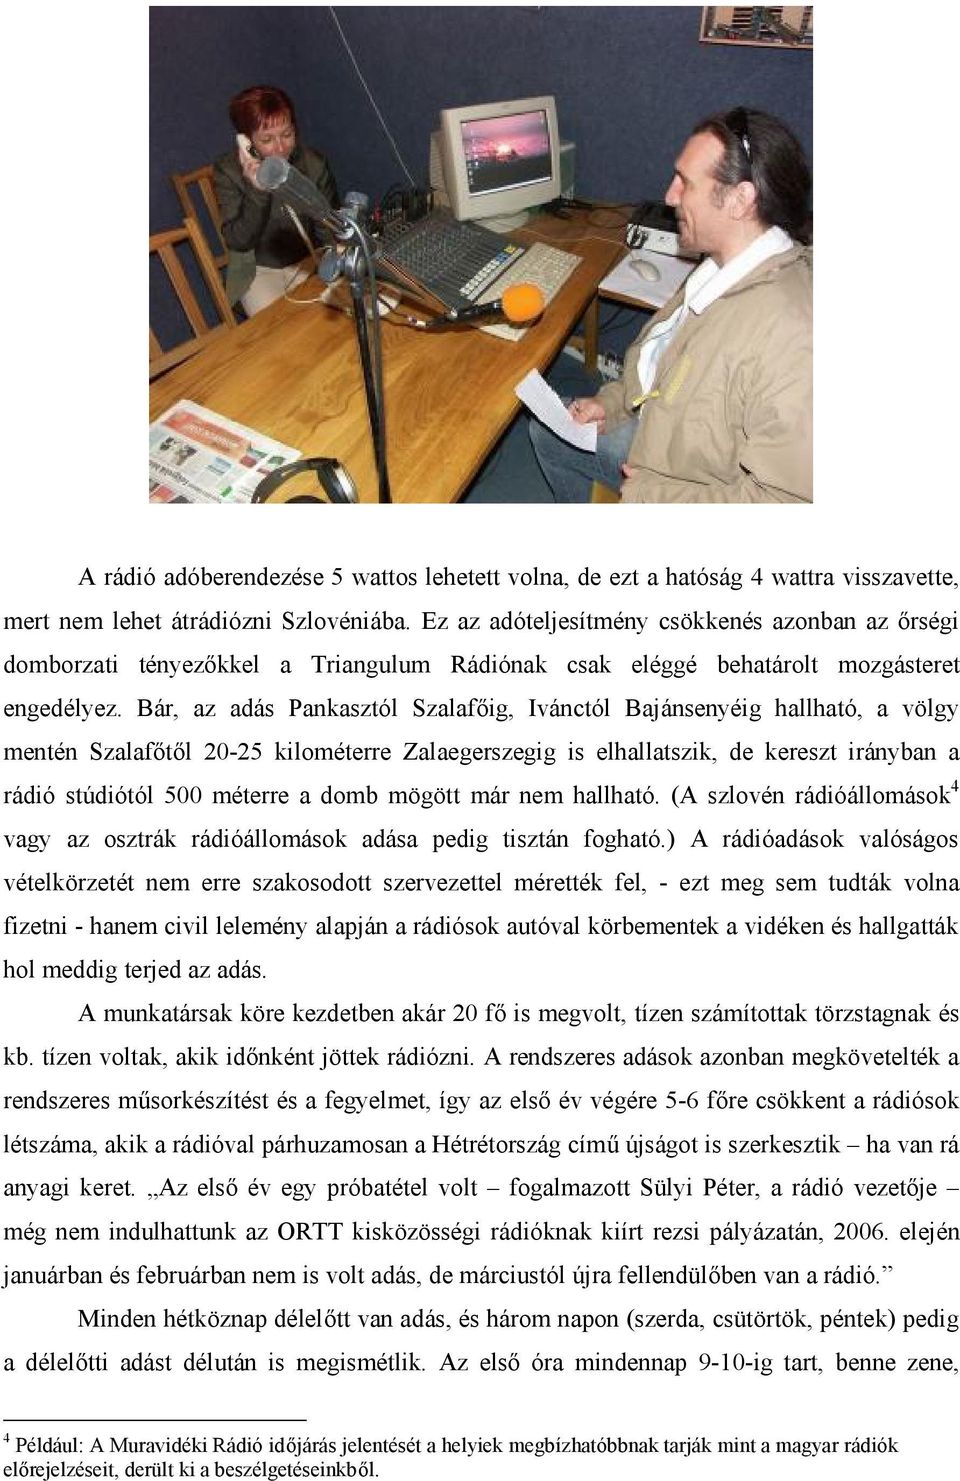 Bár, az adás Pankasztól Szalafőig, Ivánctól Bajánsenyéig hallható, a völgy mentén Szalafőtől 20-25 kilométerre Zalaegerszegig is elhallatszik, de kereszt irányban a rádió stúdiótól 500 méterre a domb